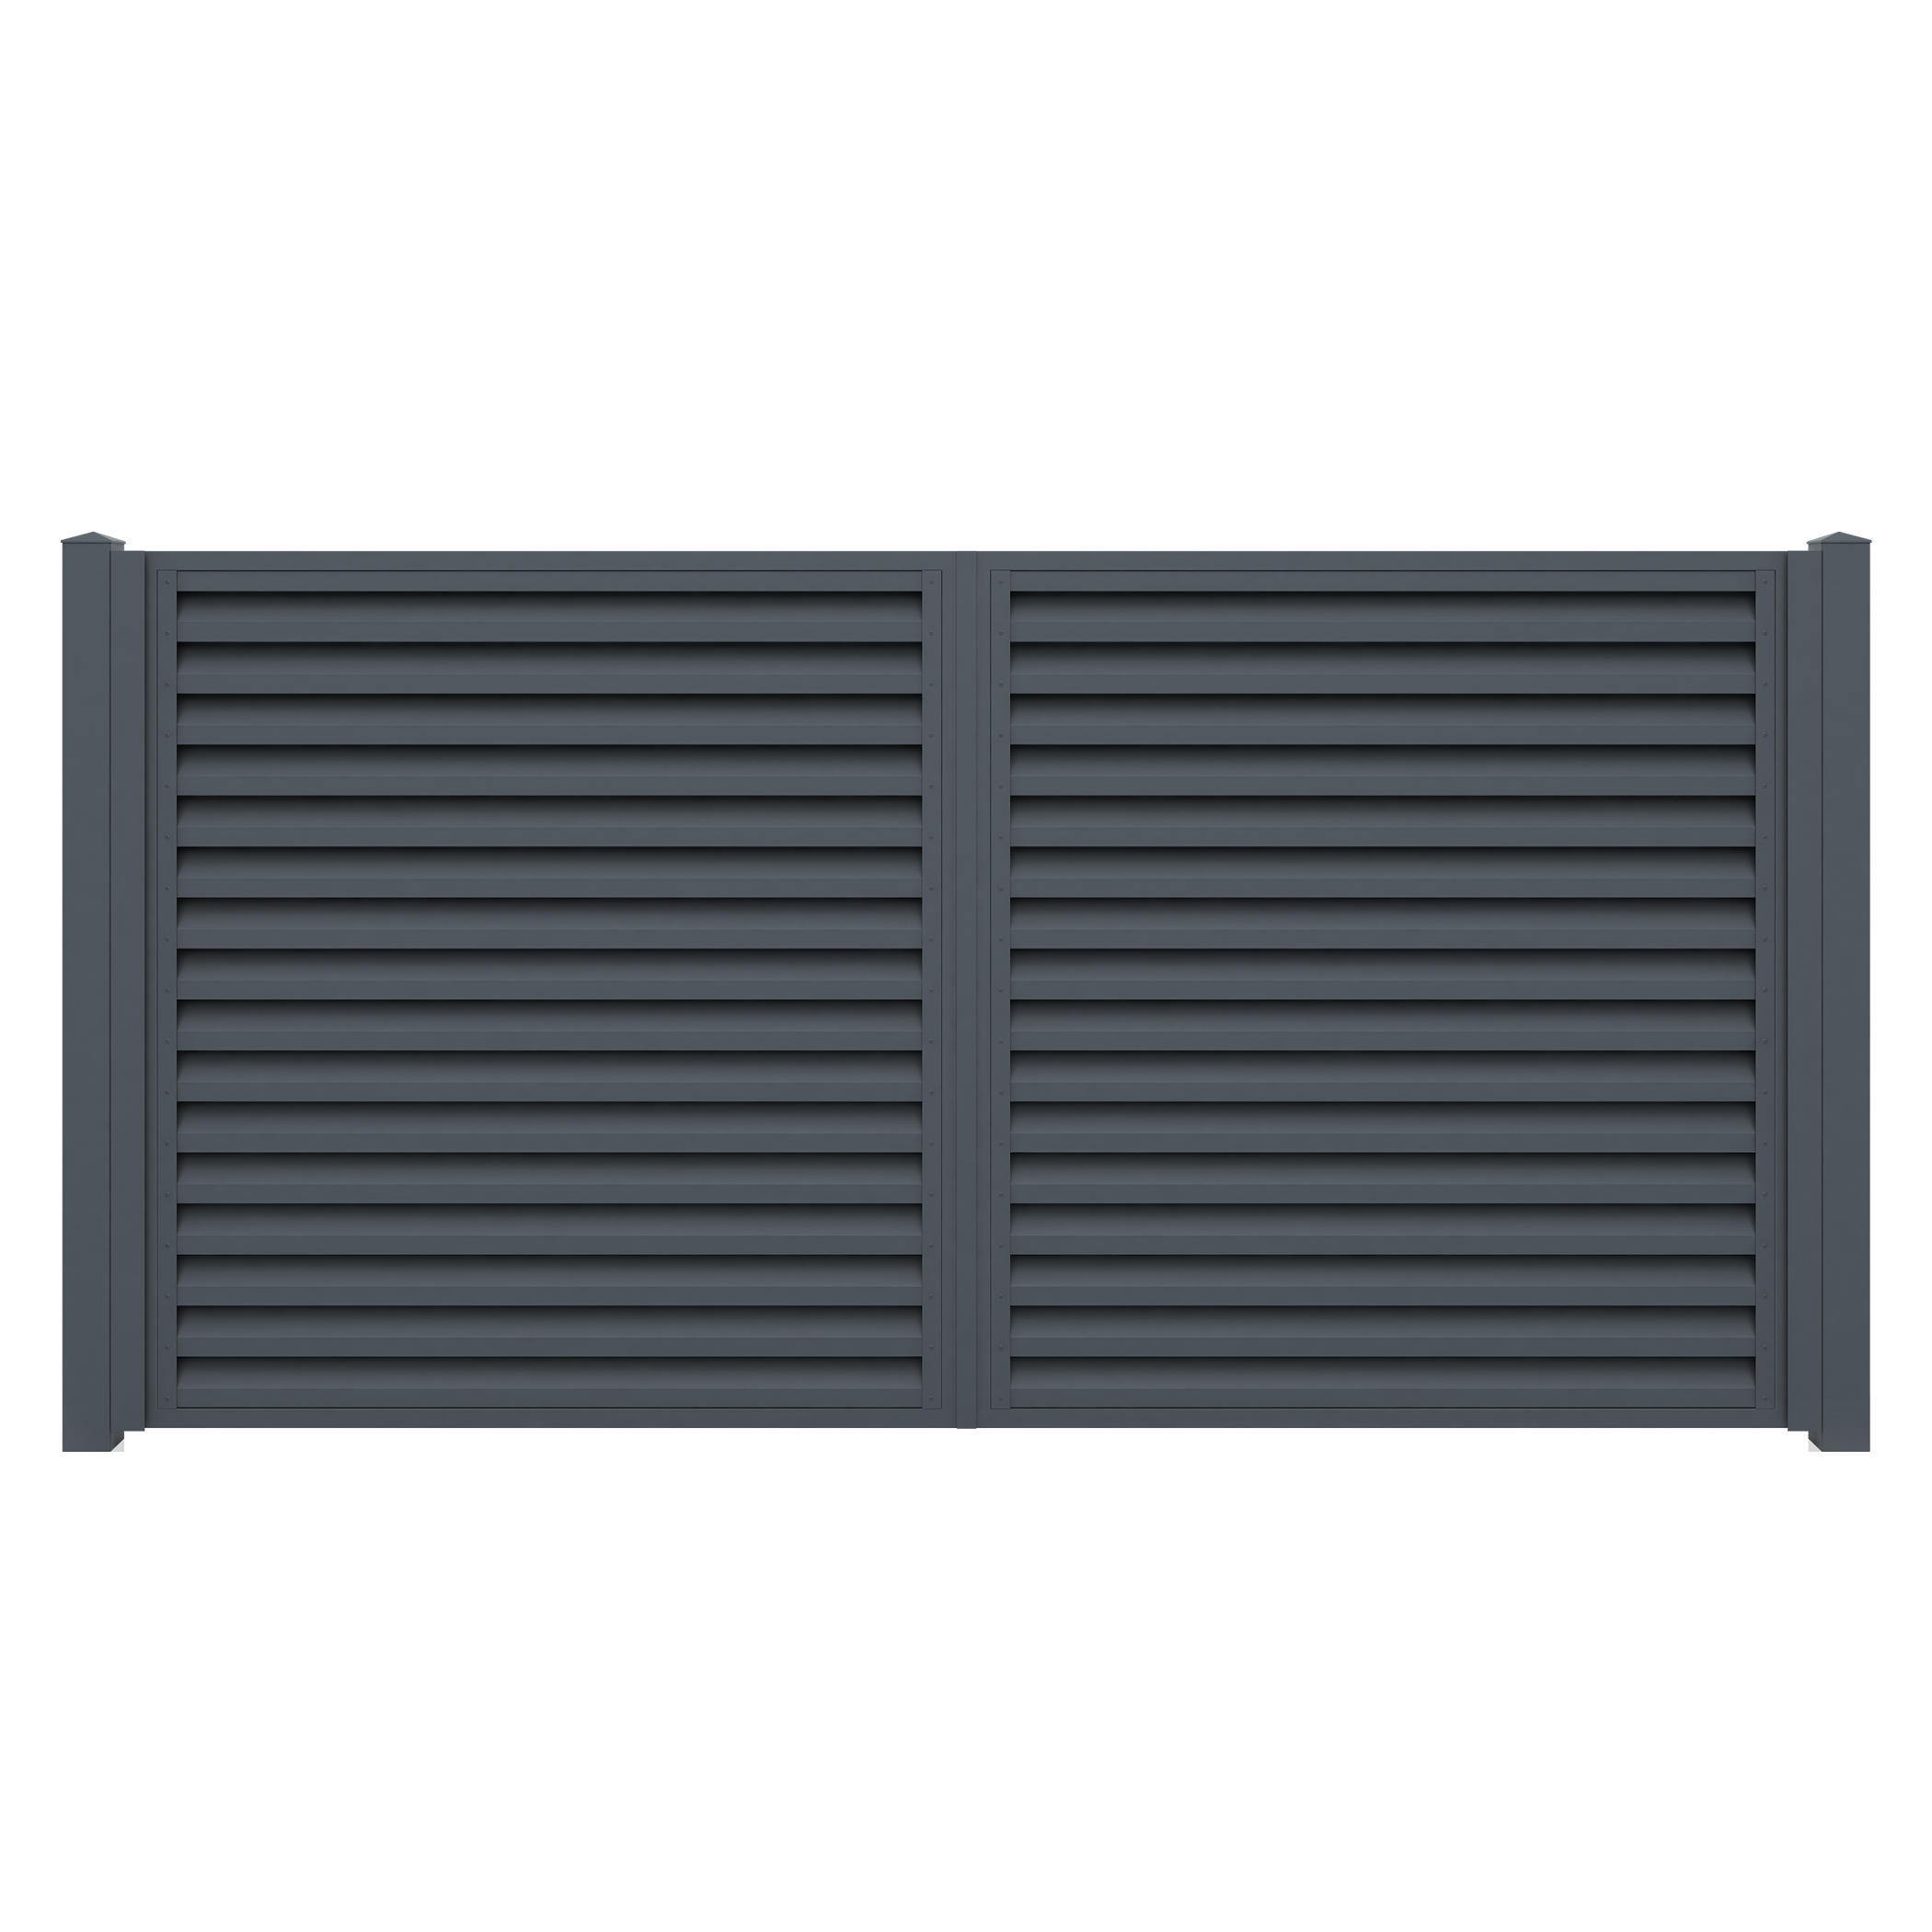 Poarta metalica auto aluminiu PA44, negru (RAL 9005), 3370  x 1800 mm